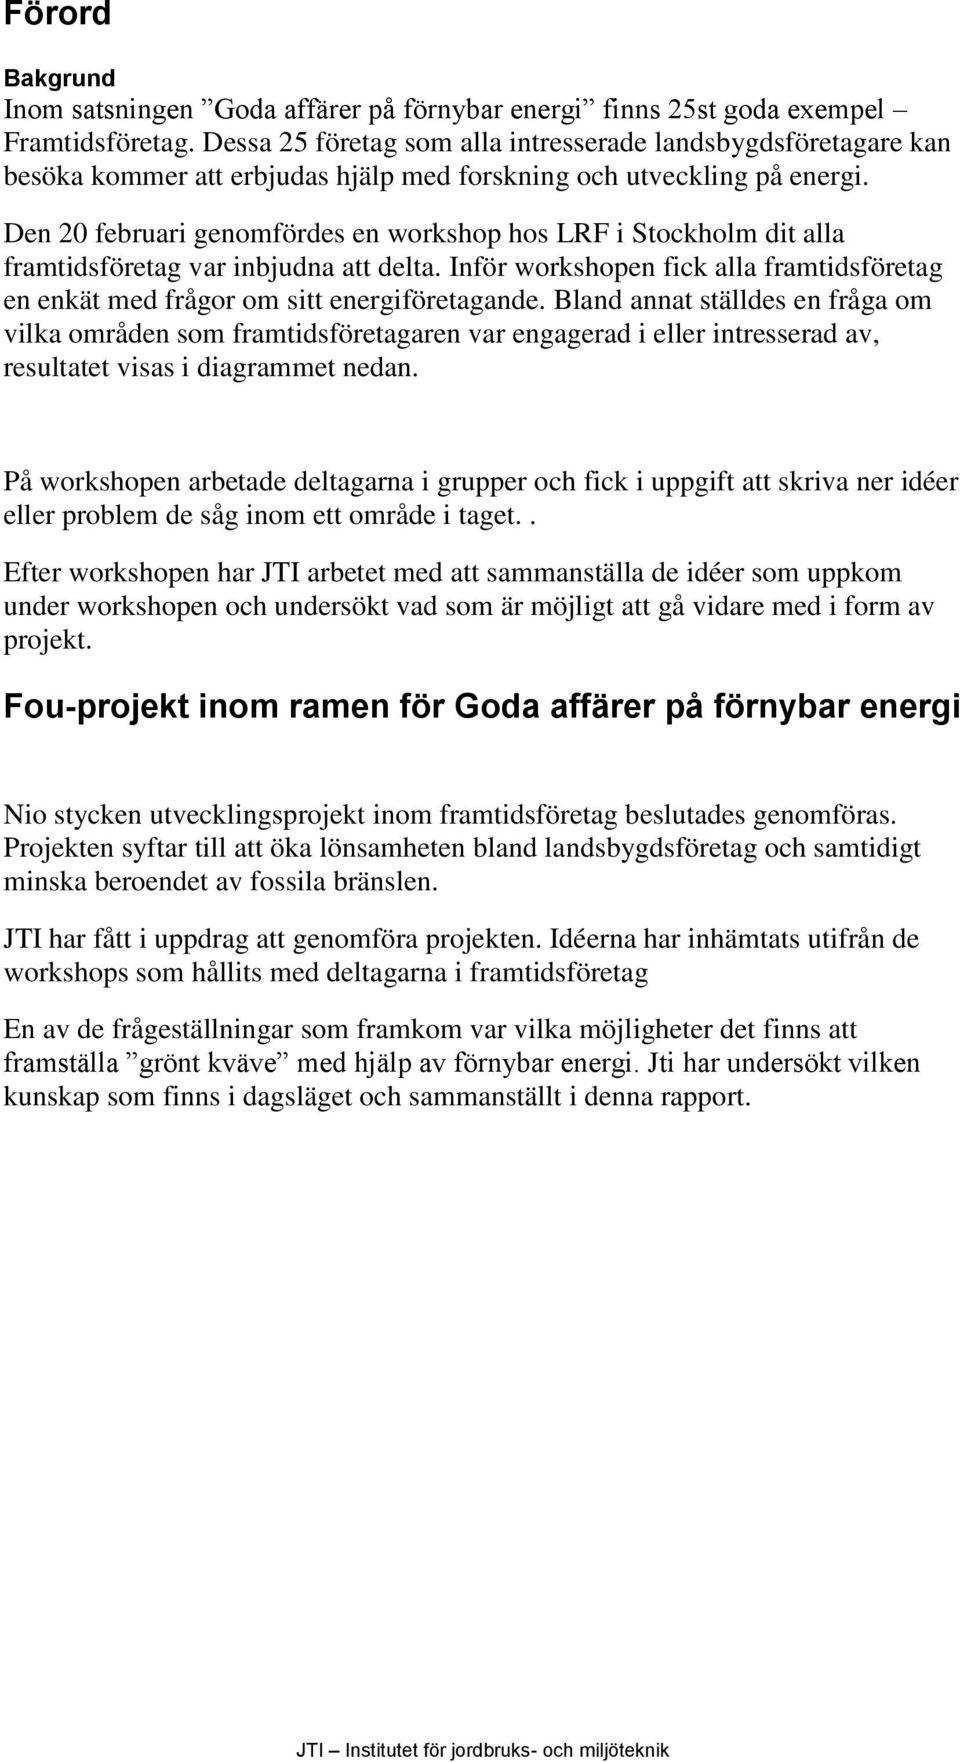 Den 20 februari genomfördes en workshop hos LRF i Stockholm dit alla framtidsföretag var inbjudna att delta. Inför workshopen fick alla framtidsföretag en enkät med frågor om sitt energiföretagande.